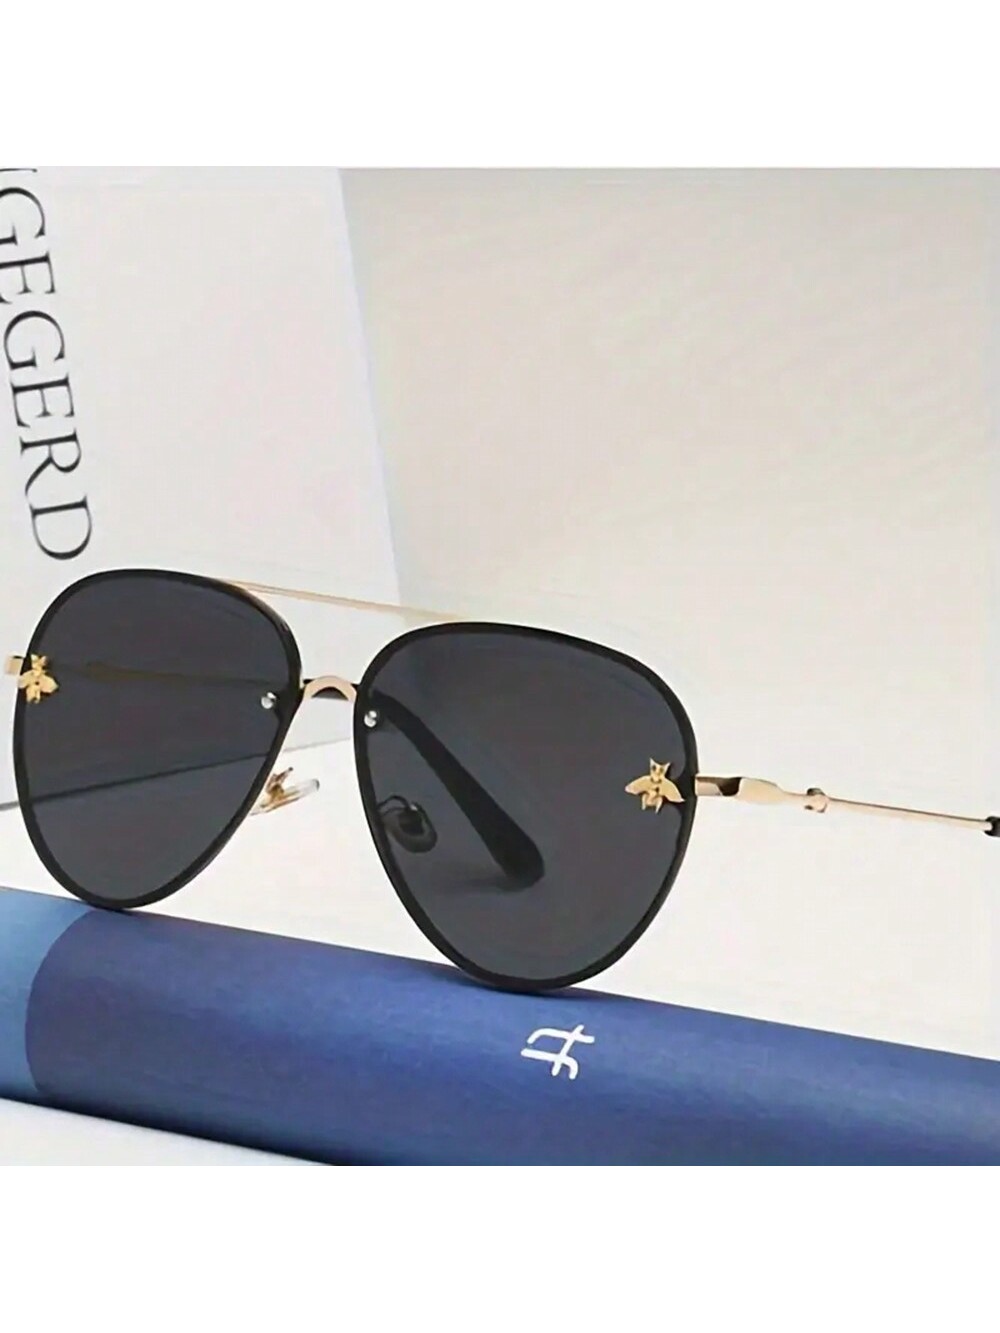 1 шт. новые модные квадратные металлические солнцезащитные очки унисекс в стиле ретро Little Bee